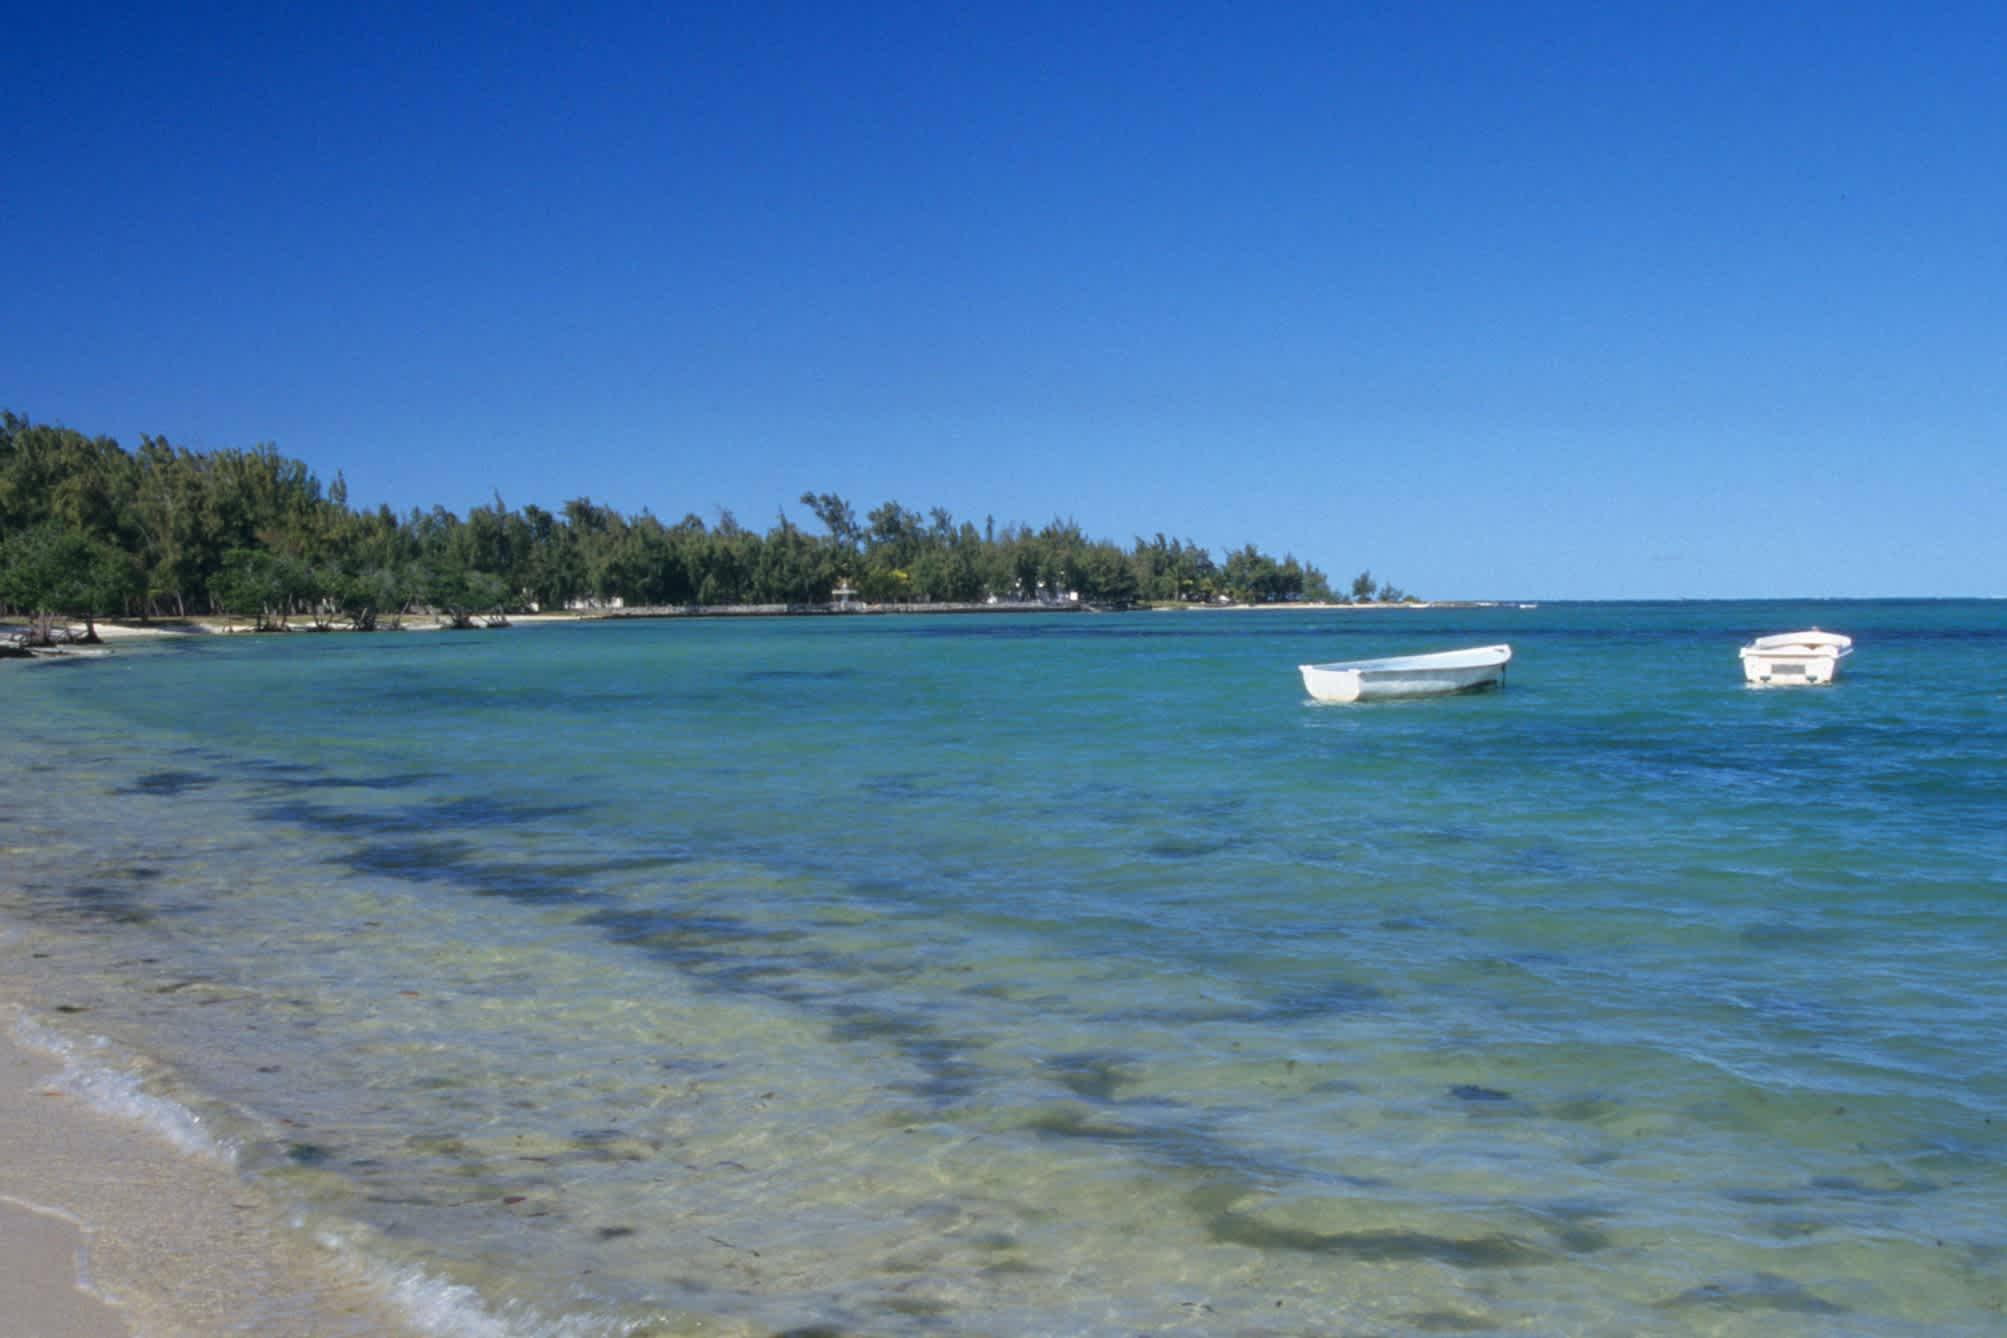 Bateaux sur l'eau cristalline au bord de la plage de Bras d'eau, à l'île Maurice